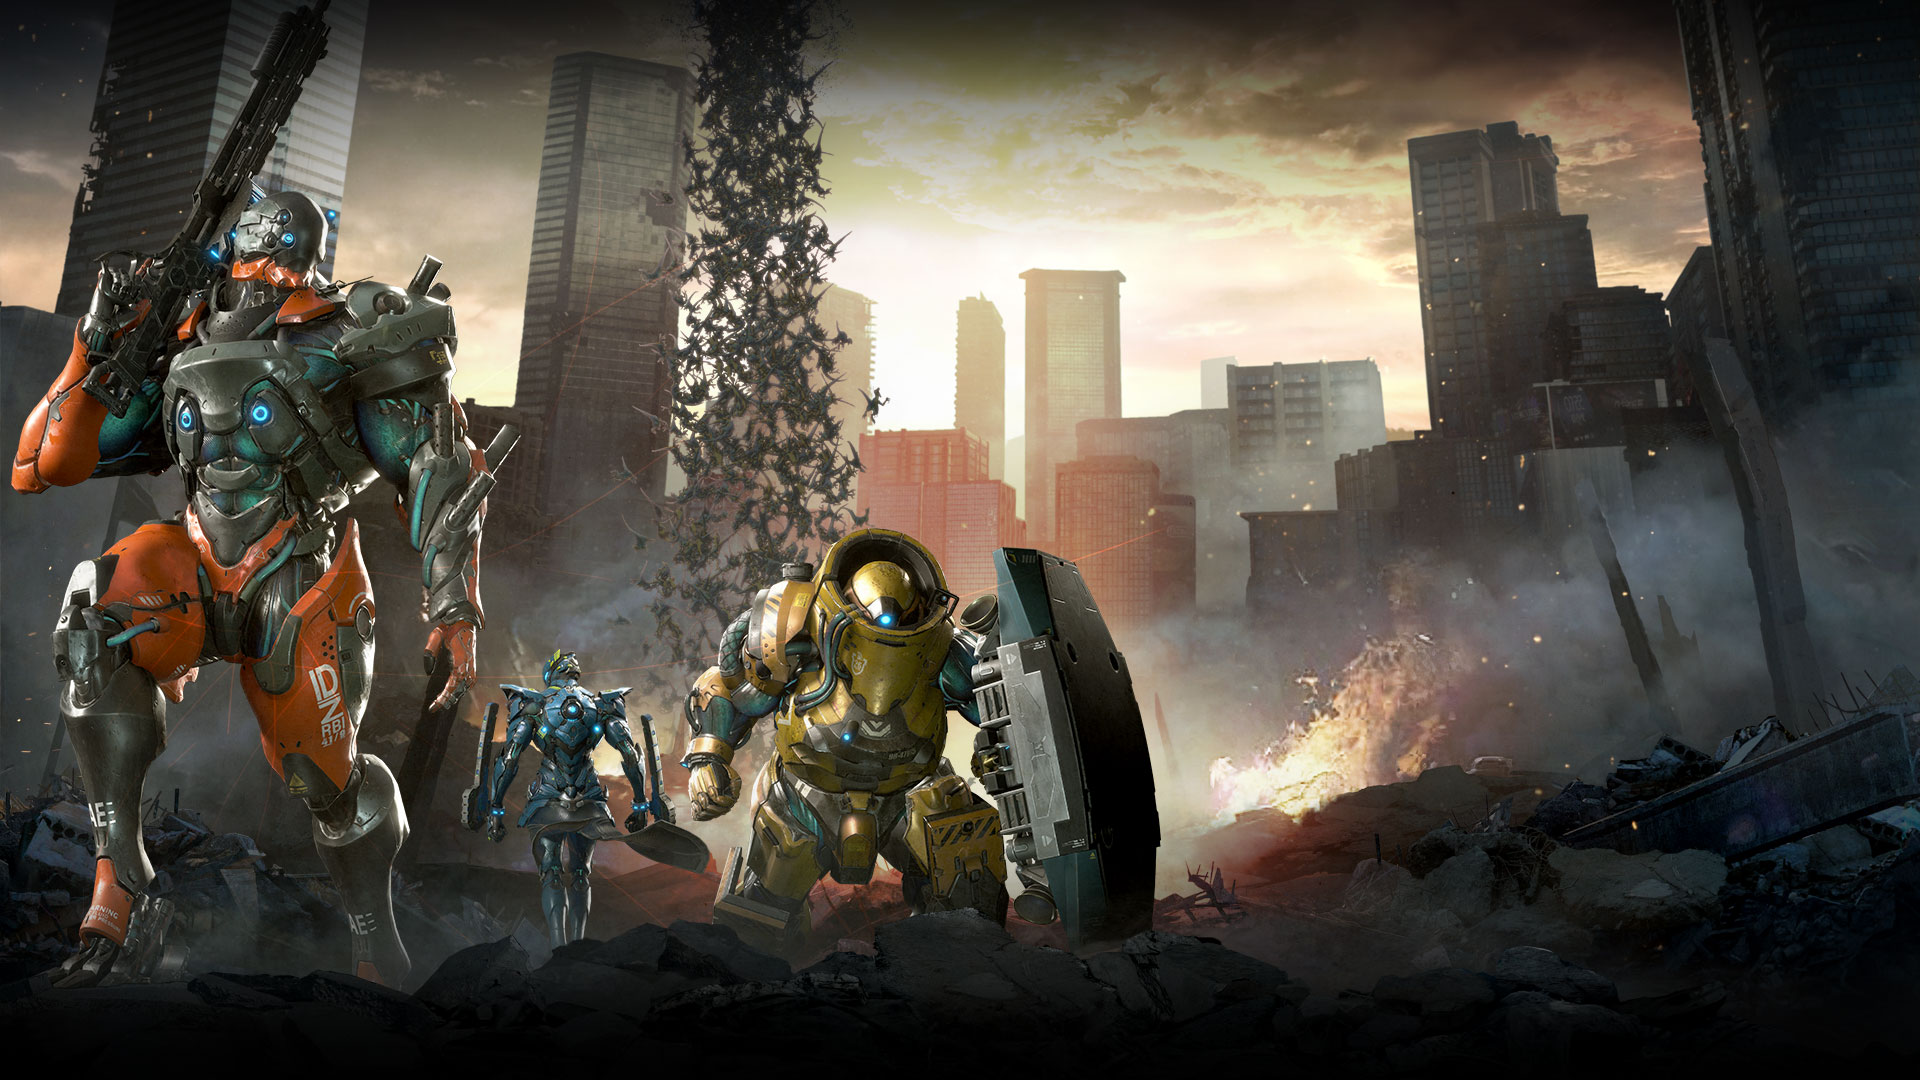 Drei mechanisierte Anzüge stehen in den Trümmern der Stadt, Dinosaurier stürzen vom Himmel.